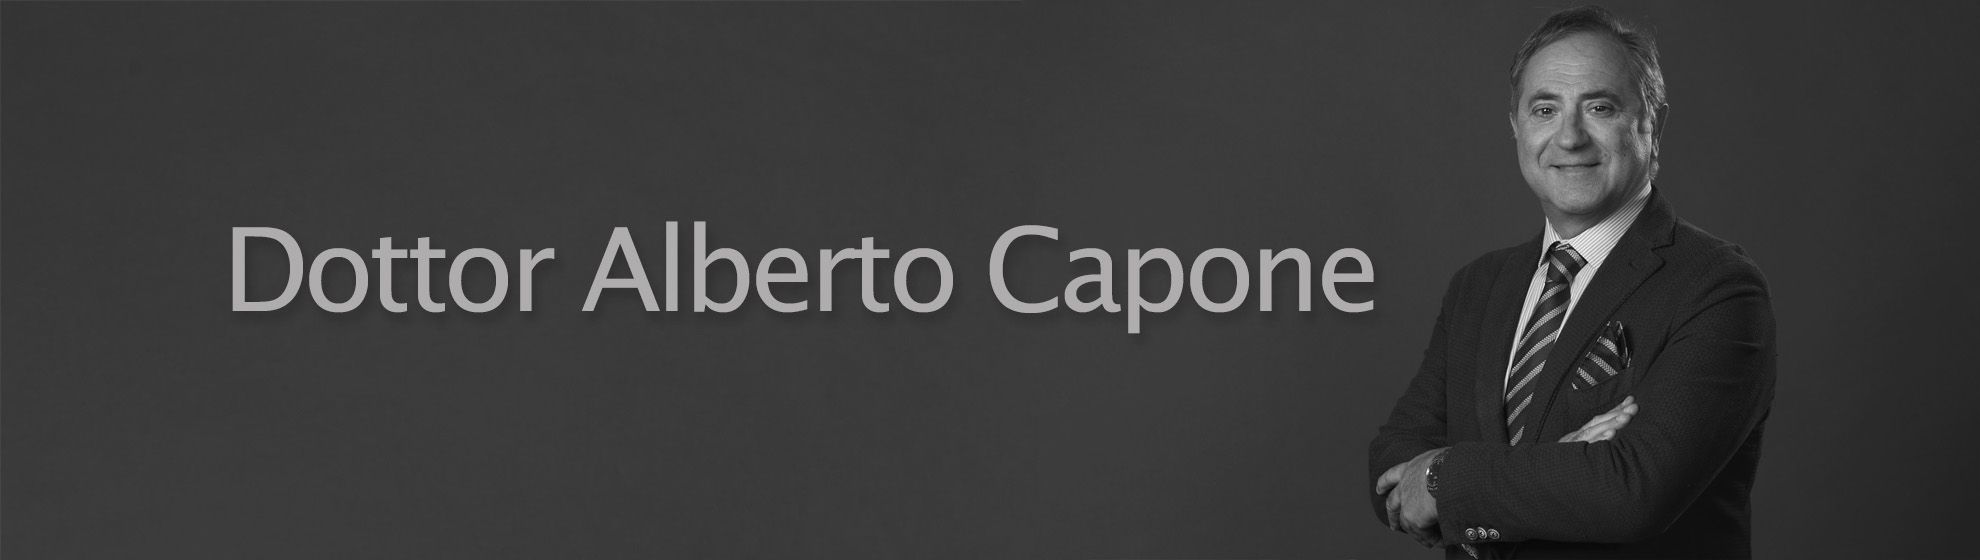 Dottor Alberto Capone